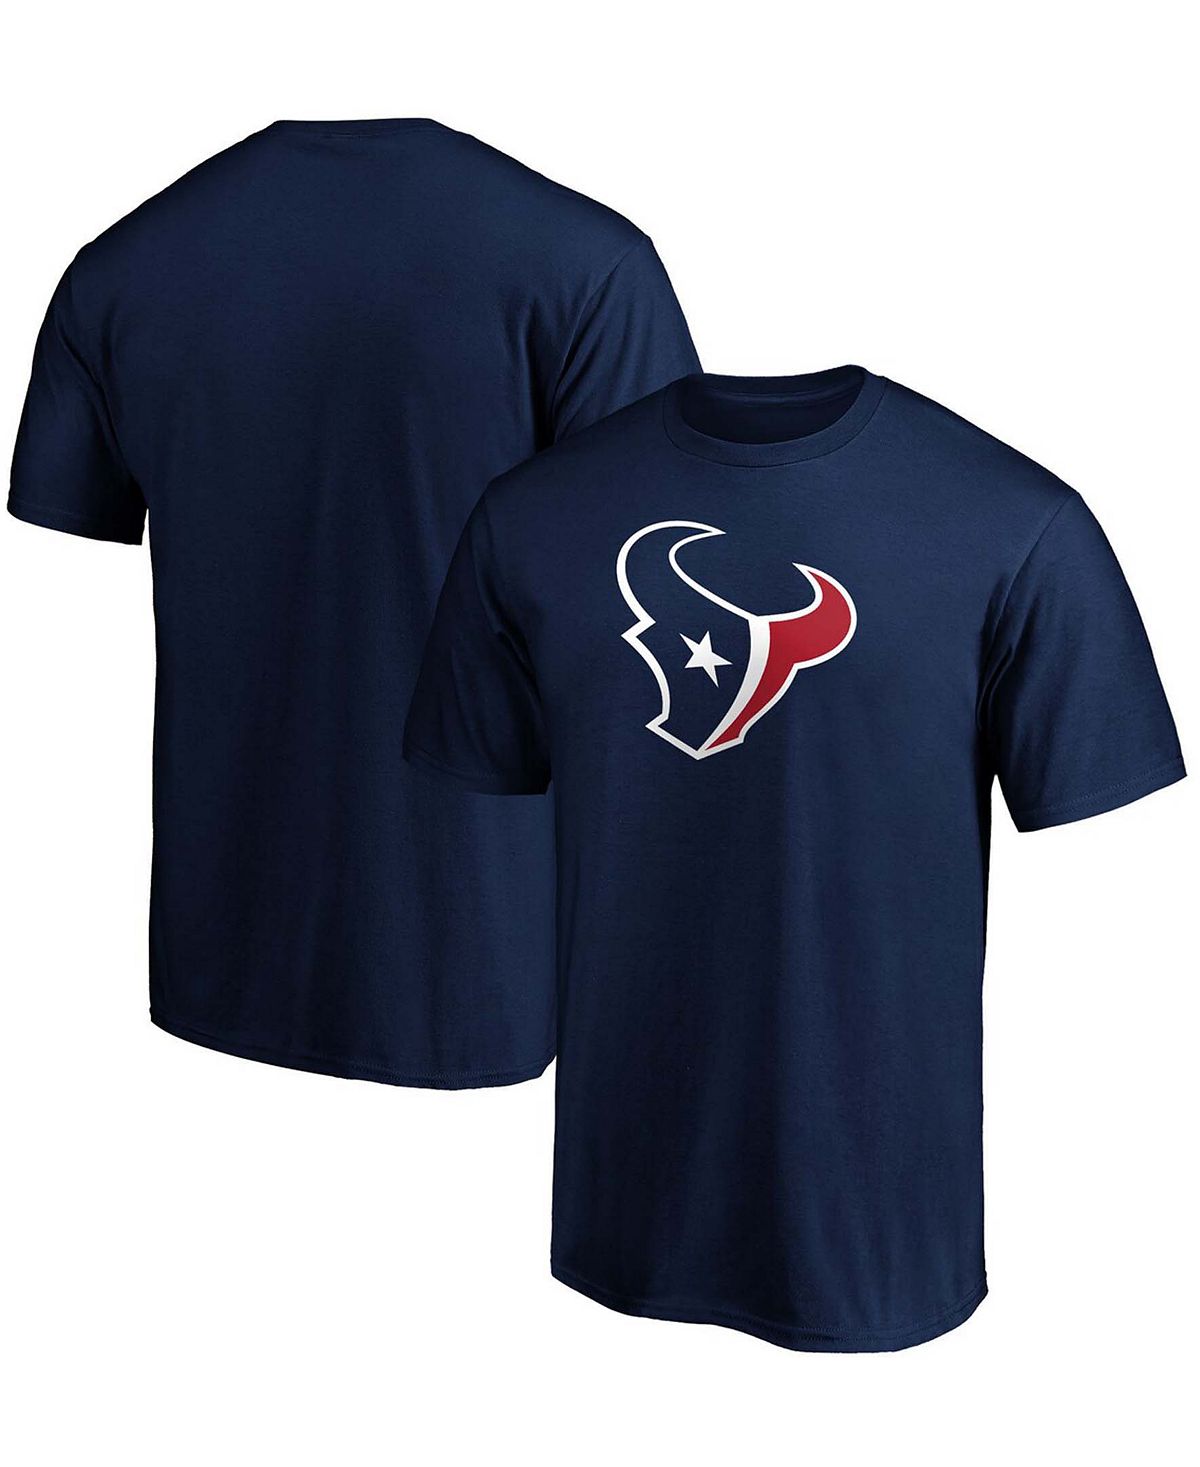 Мужская темно-синяя футболка с логотипом Houston Texans Big and Tall Primary Team Fanatics